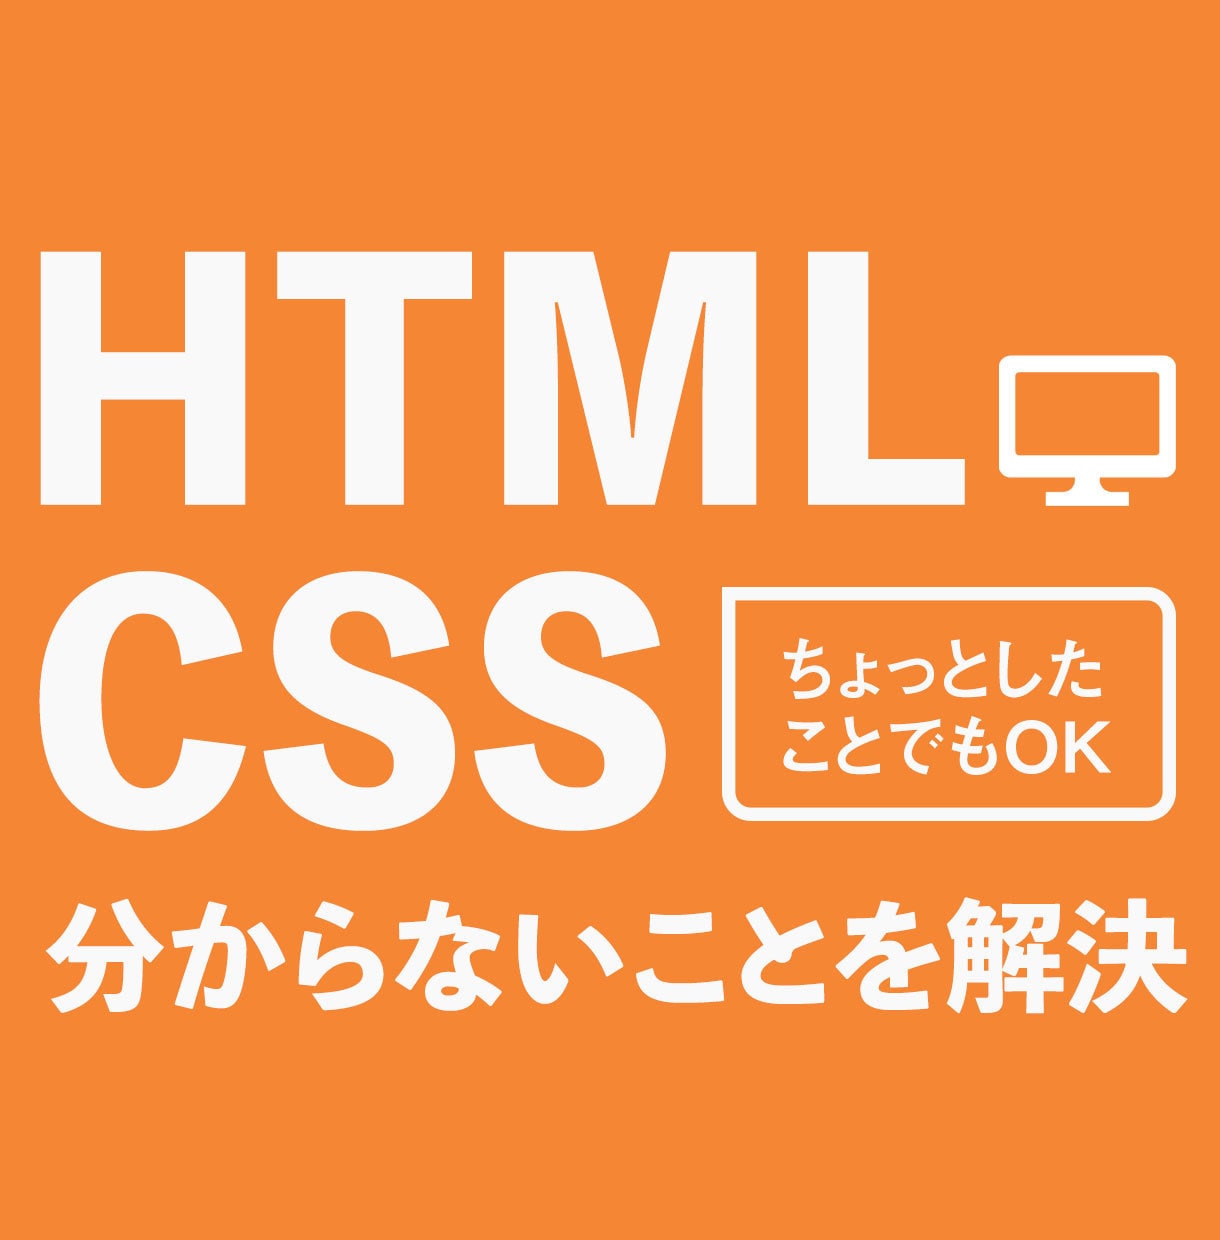 htmlやcssについて分からない事を助けます 未解決のhtmlやcssを解決できるアドバイスをします。 イメージ1